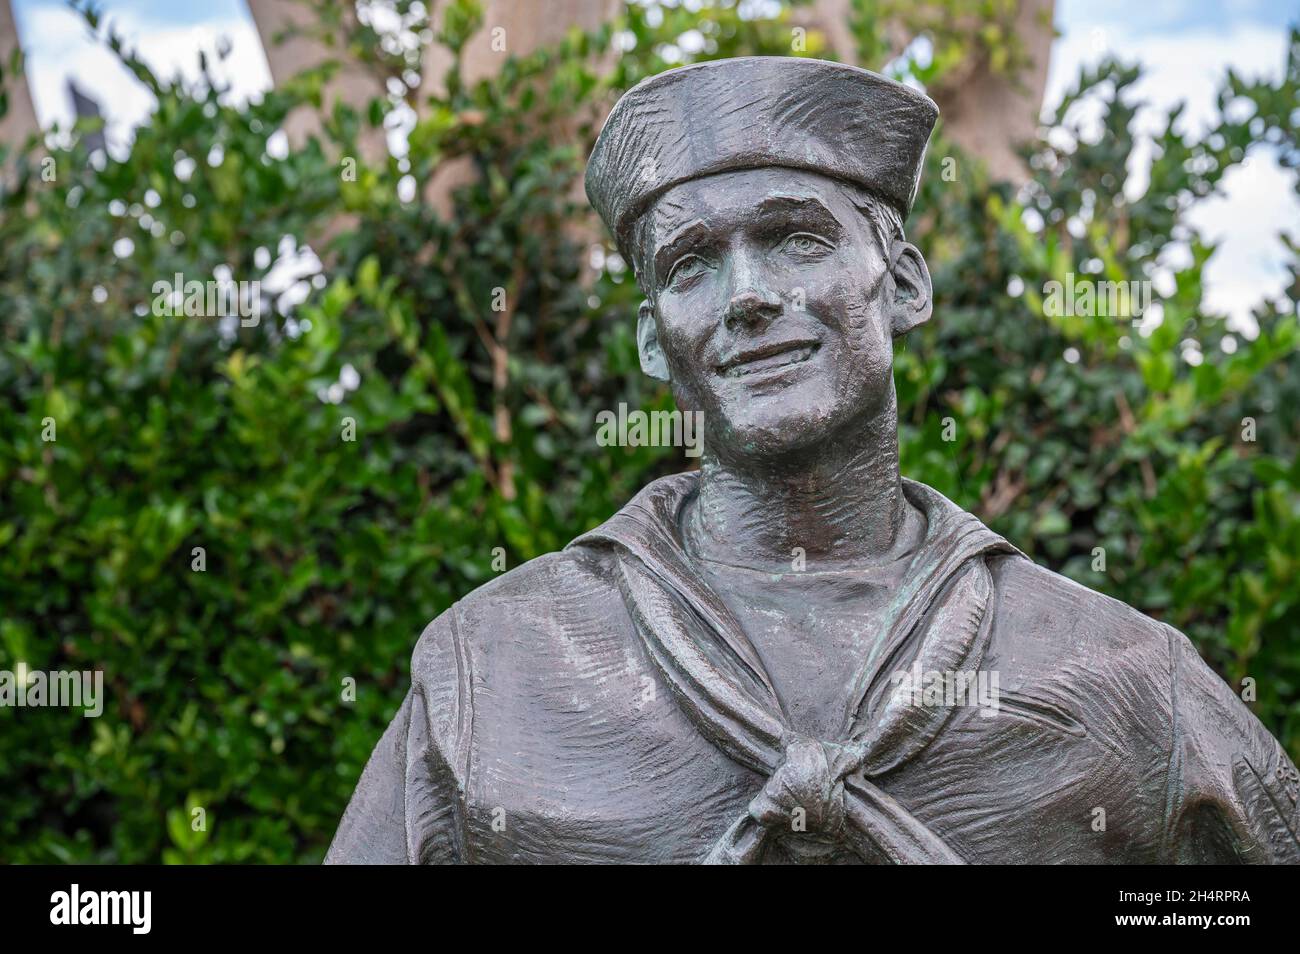 San Diego, Kalifornien, USA - 4. Oktober 2021: Ein nationaler Gruß an Bob Hope und die Militärstatuen. Nahaufnahme von lächelndem Seemann Brust und Kopf mit gr Stockfoto